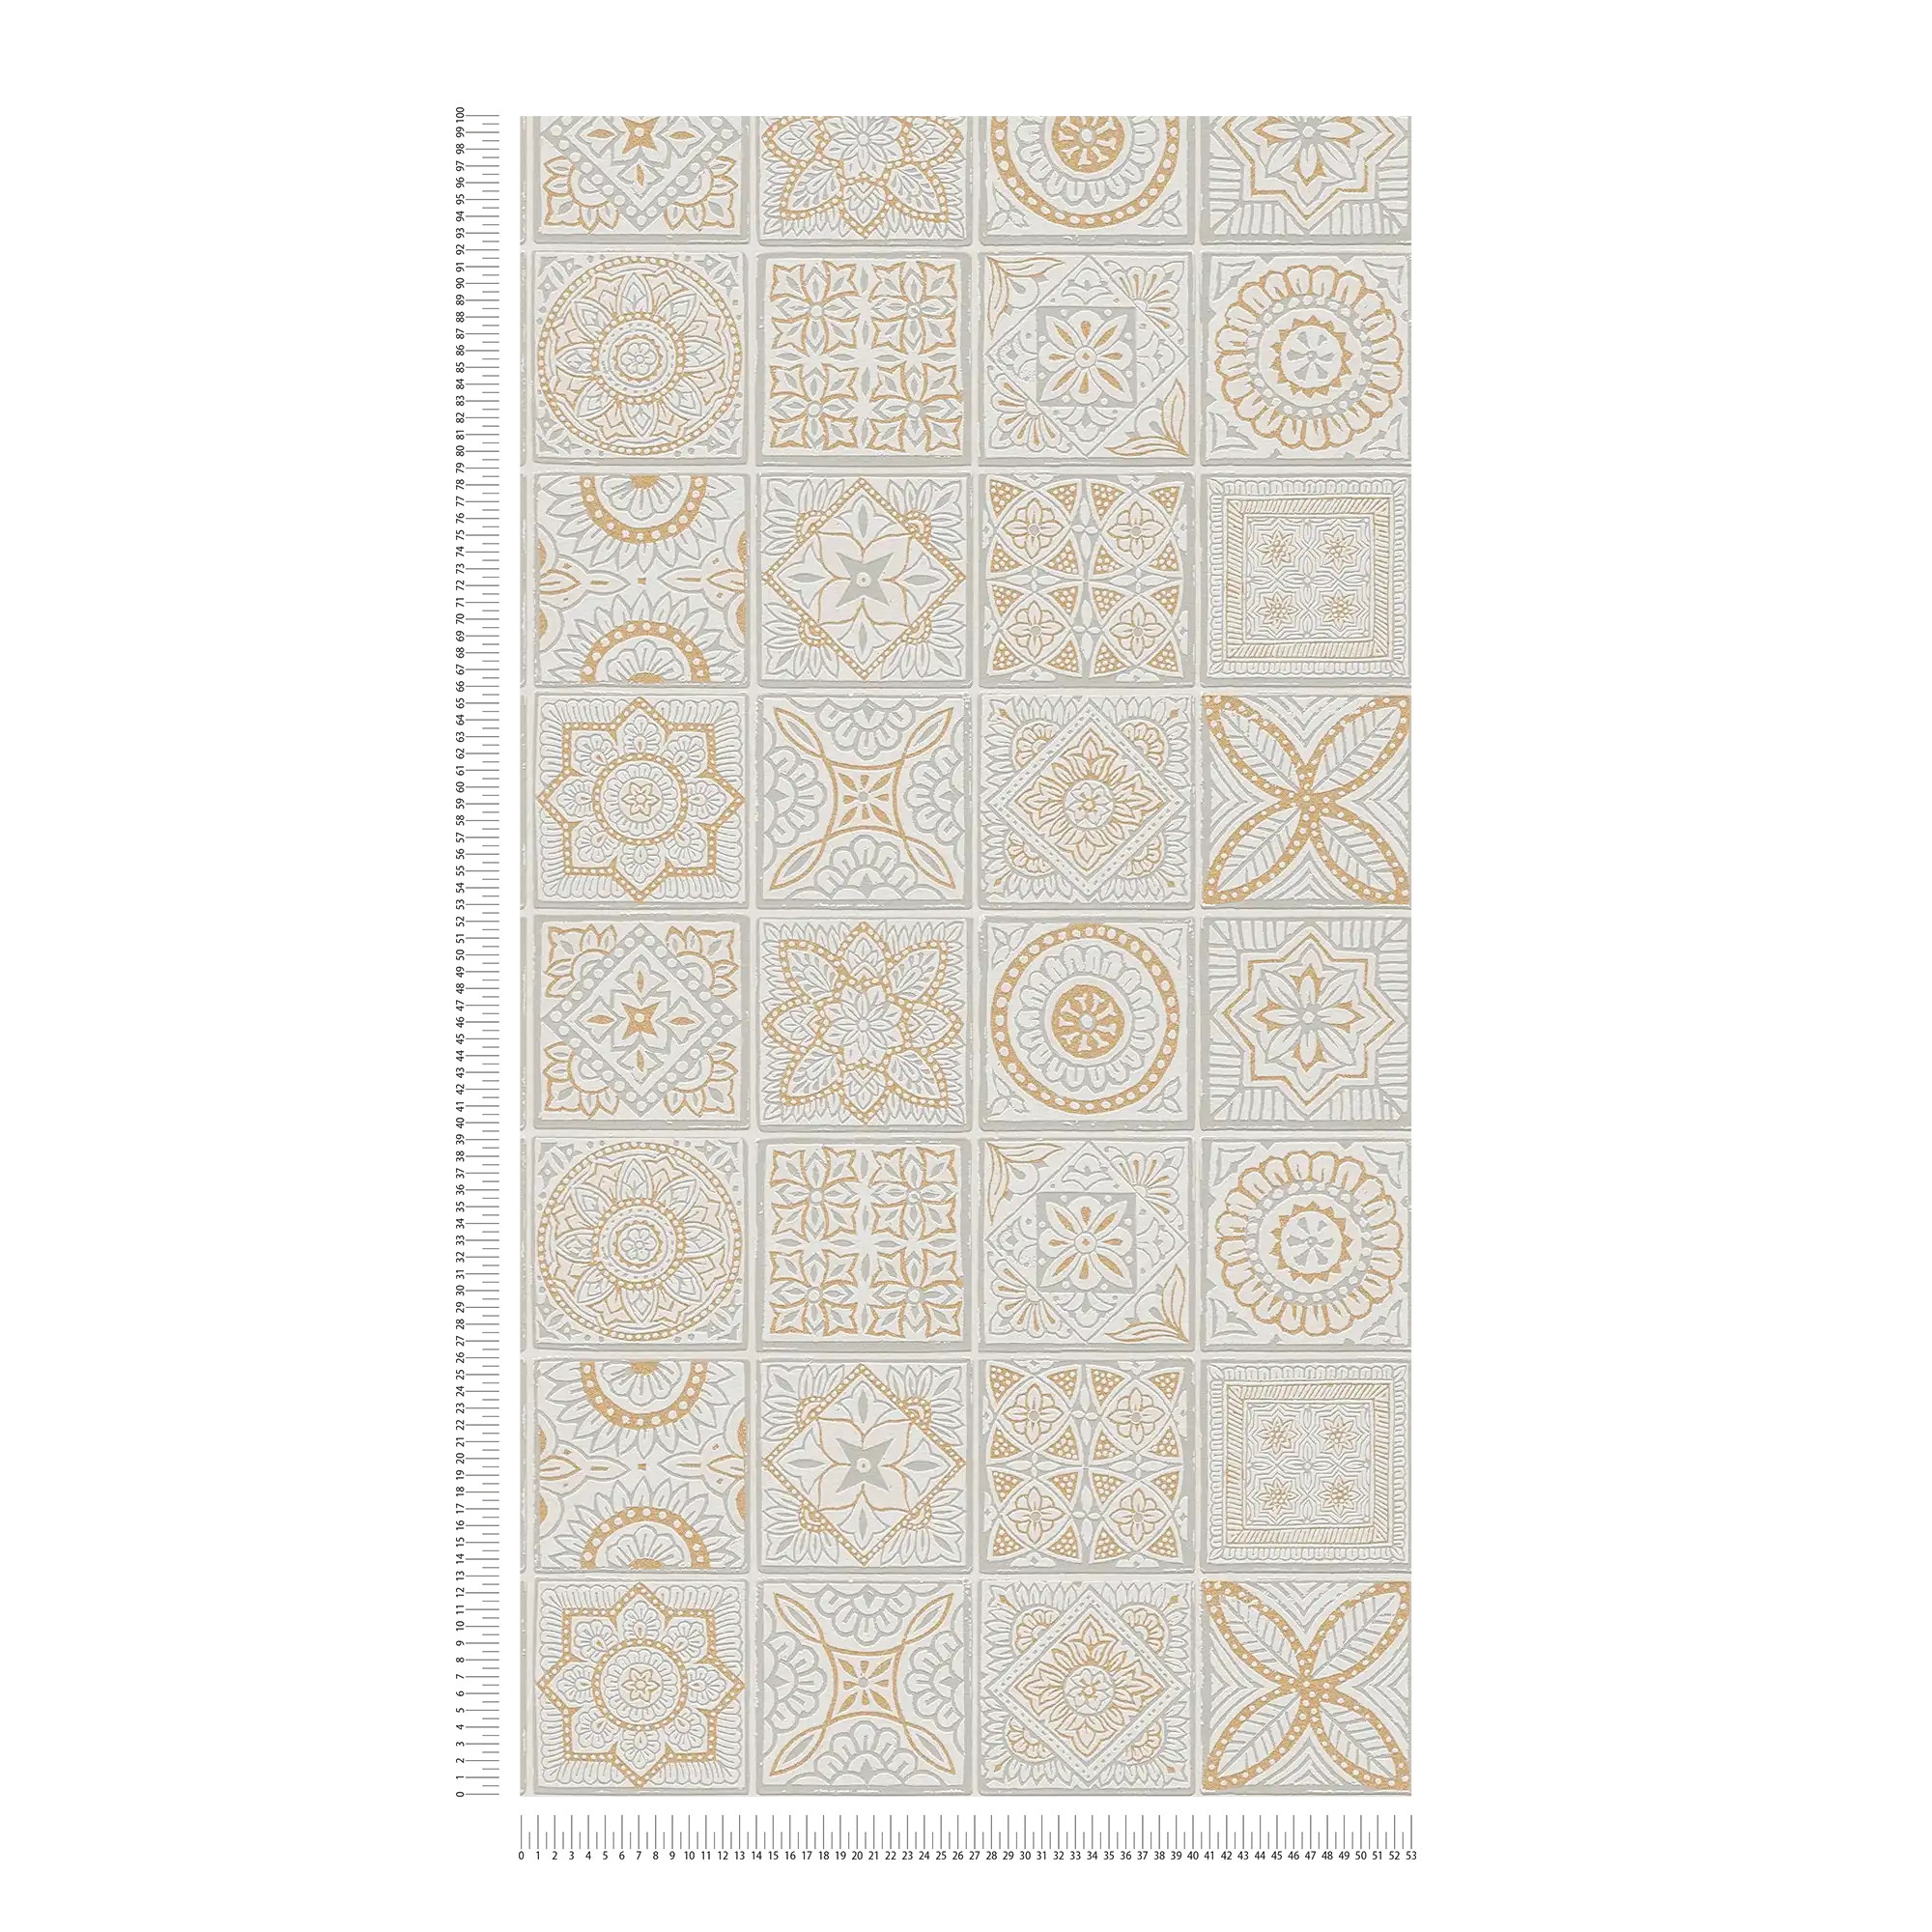             Tegellook vliesbehang met bloemenmozaïeken - goud, grijs, wit
        